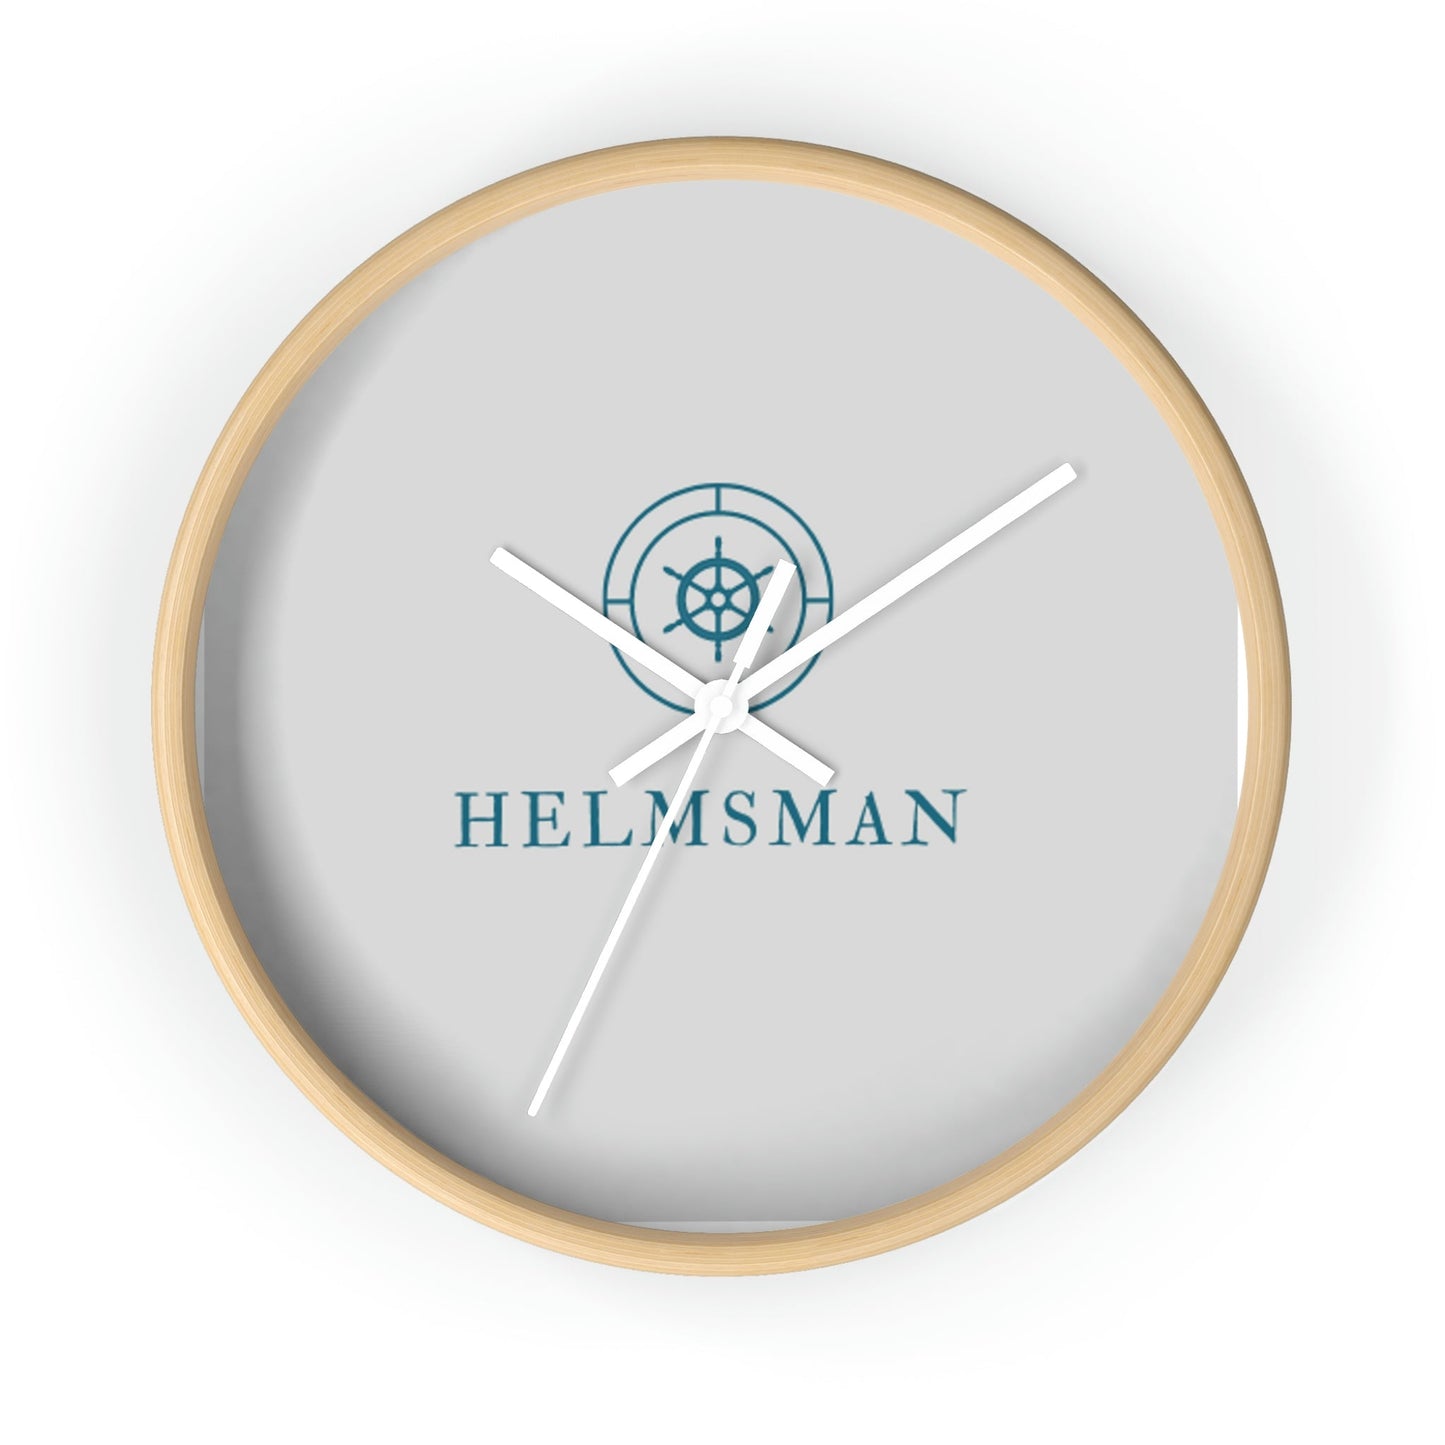 Helmsman Wall Clock - Wooden / White / 10"